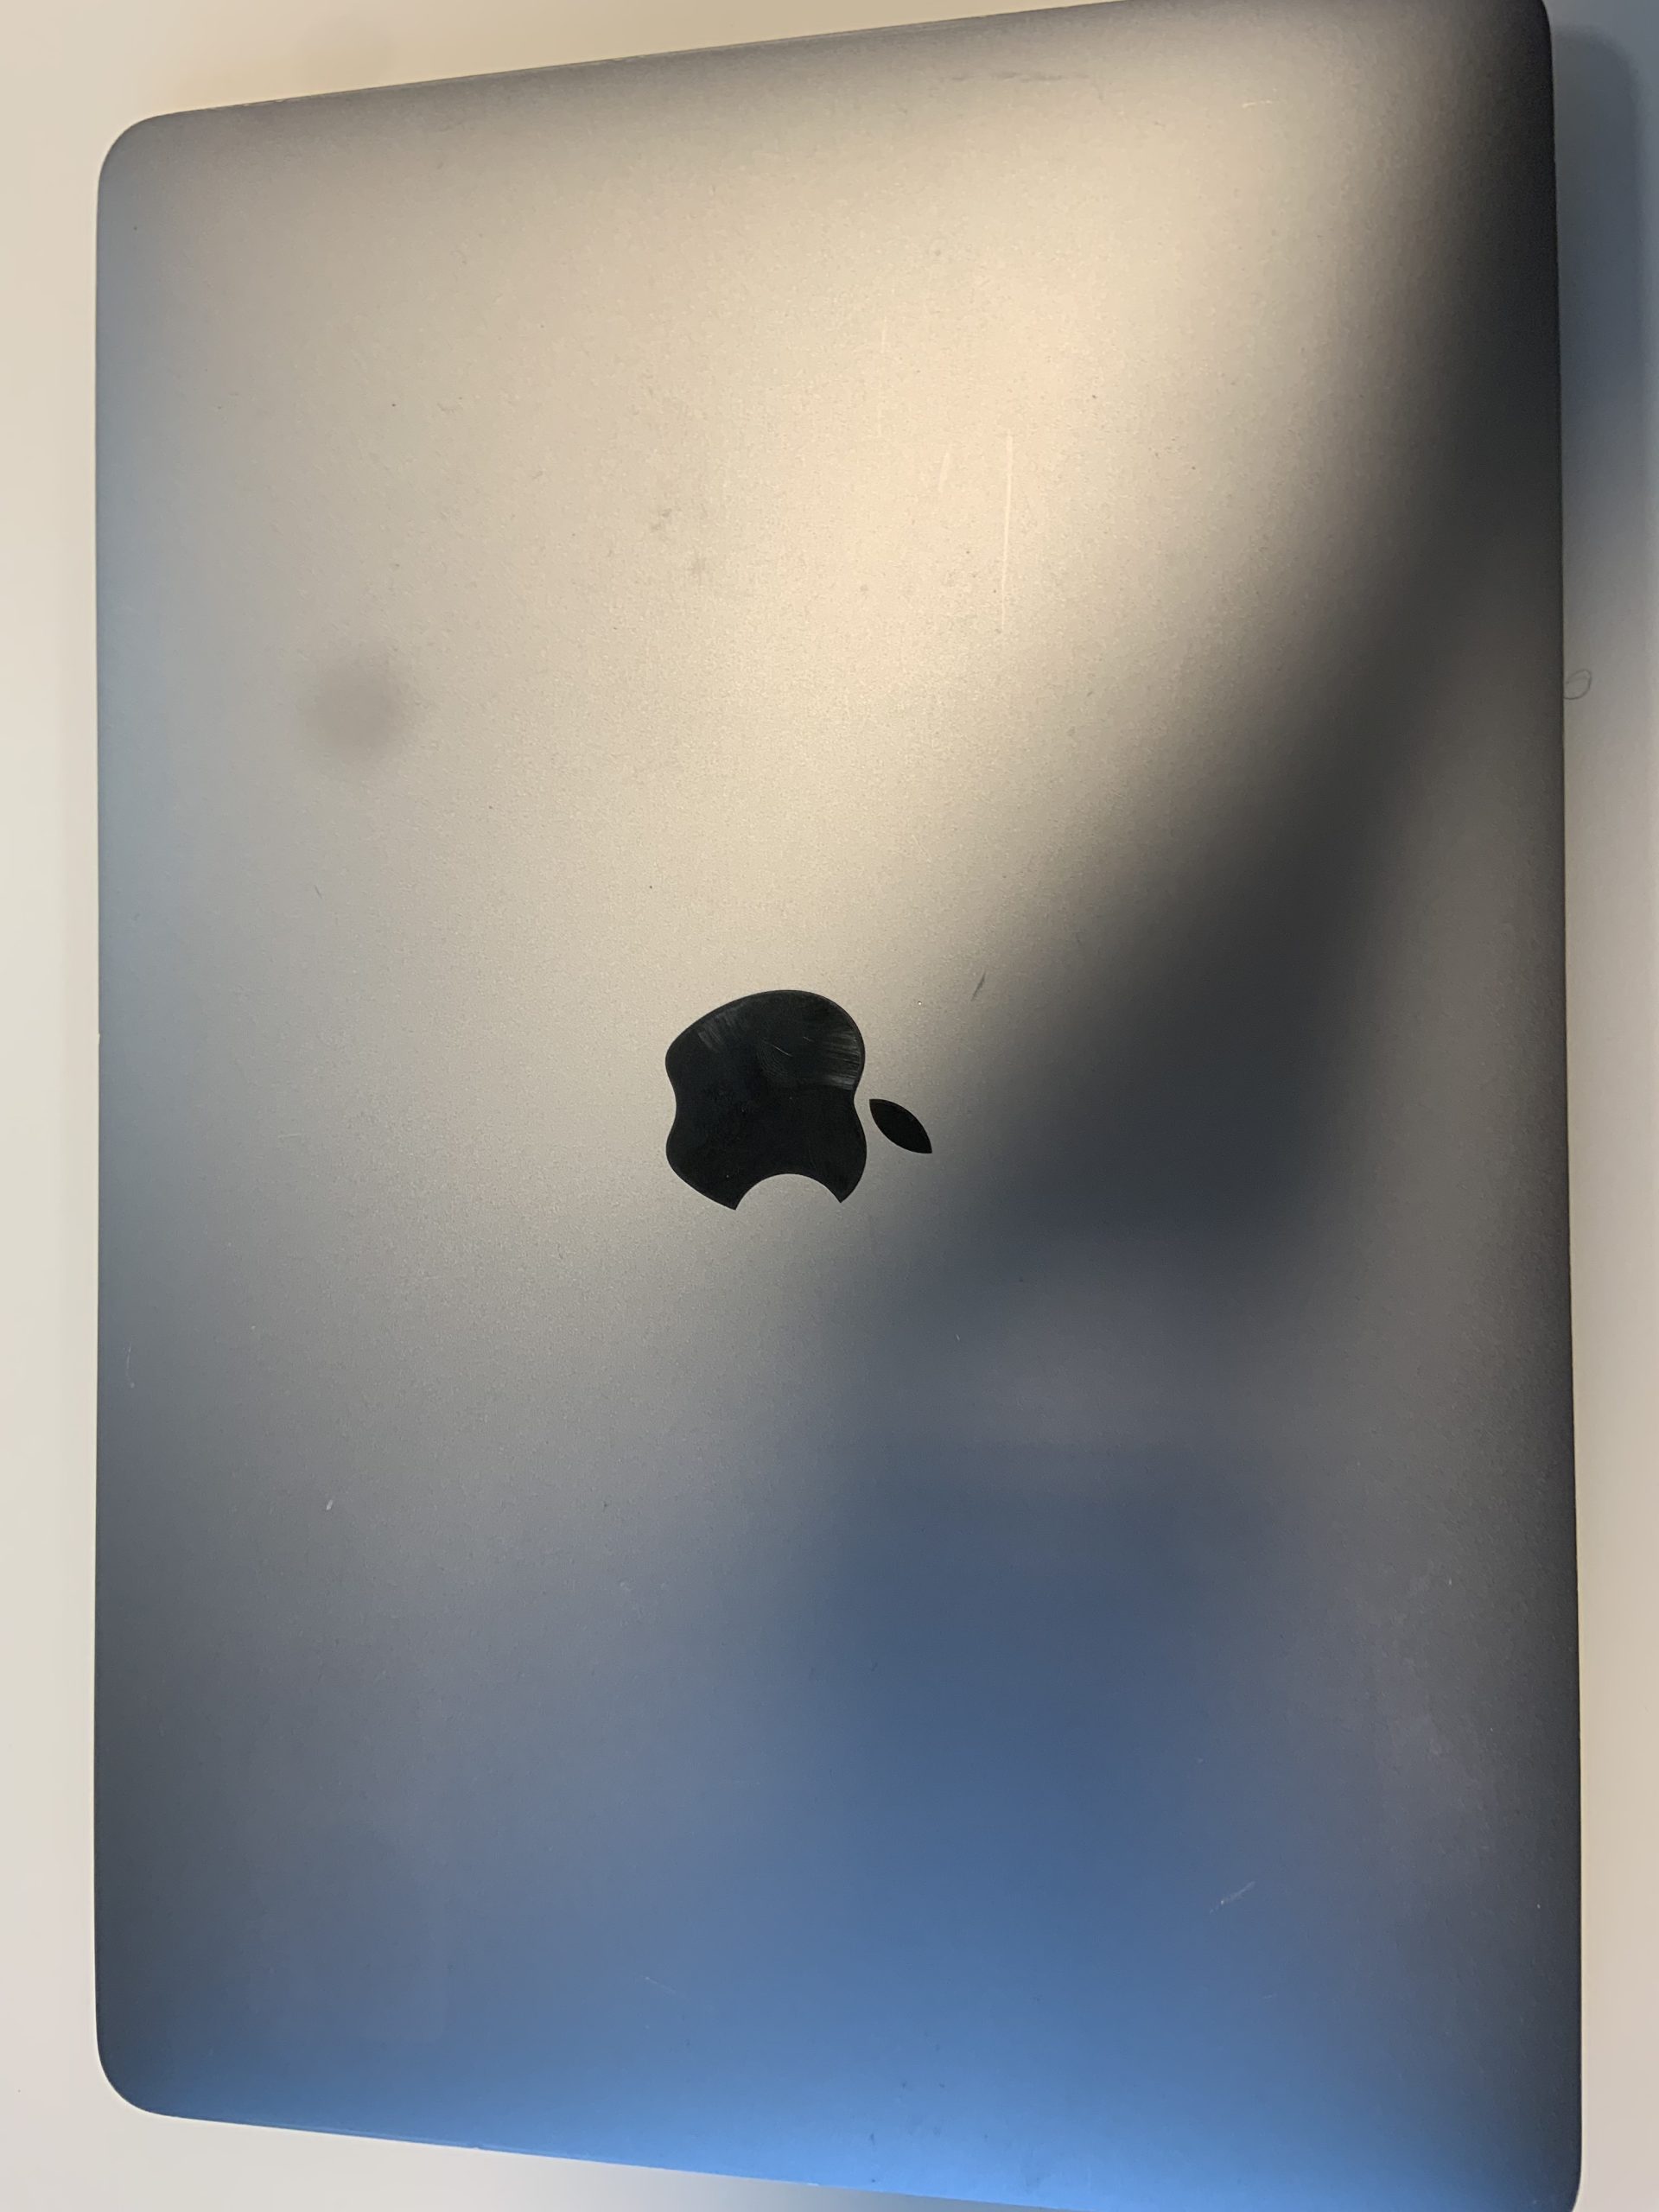 MacBook Pro 2017 15″ – 256Go – 16Go – TouchBar